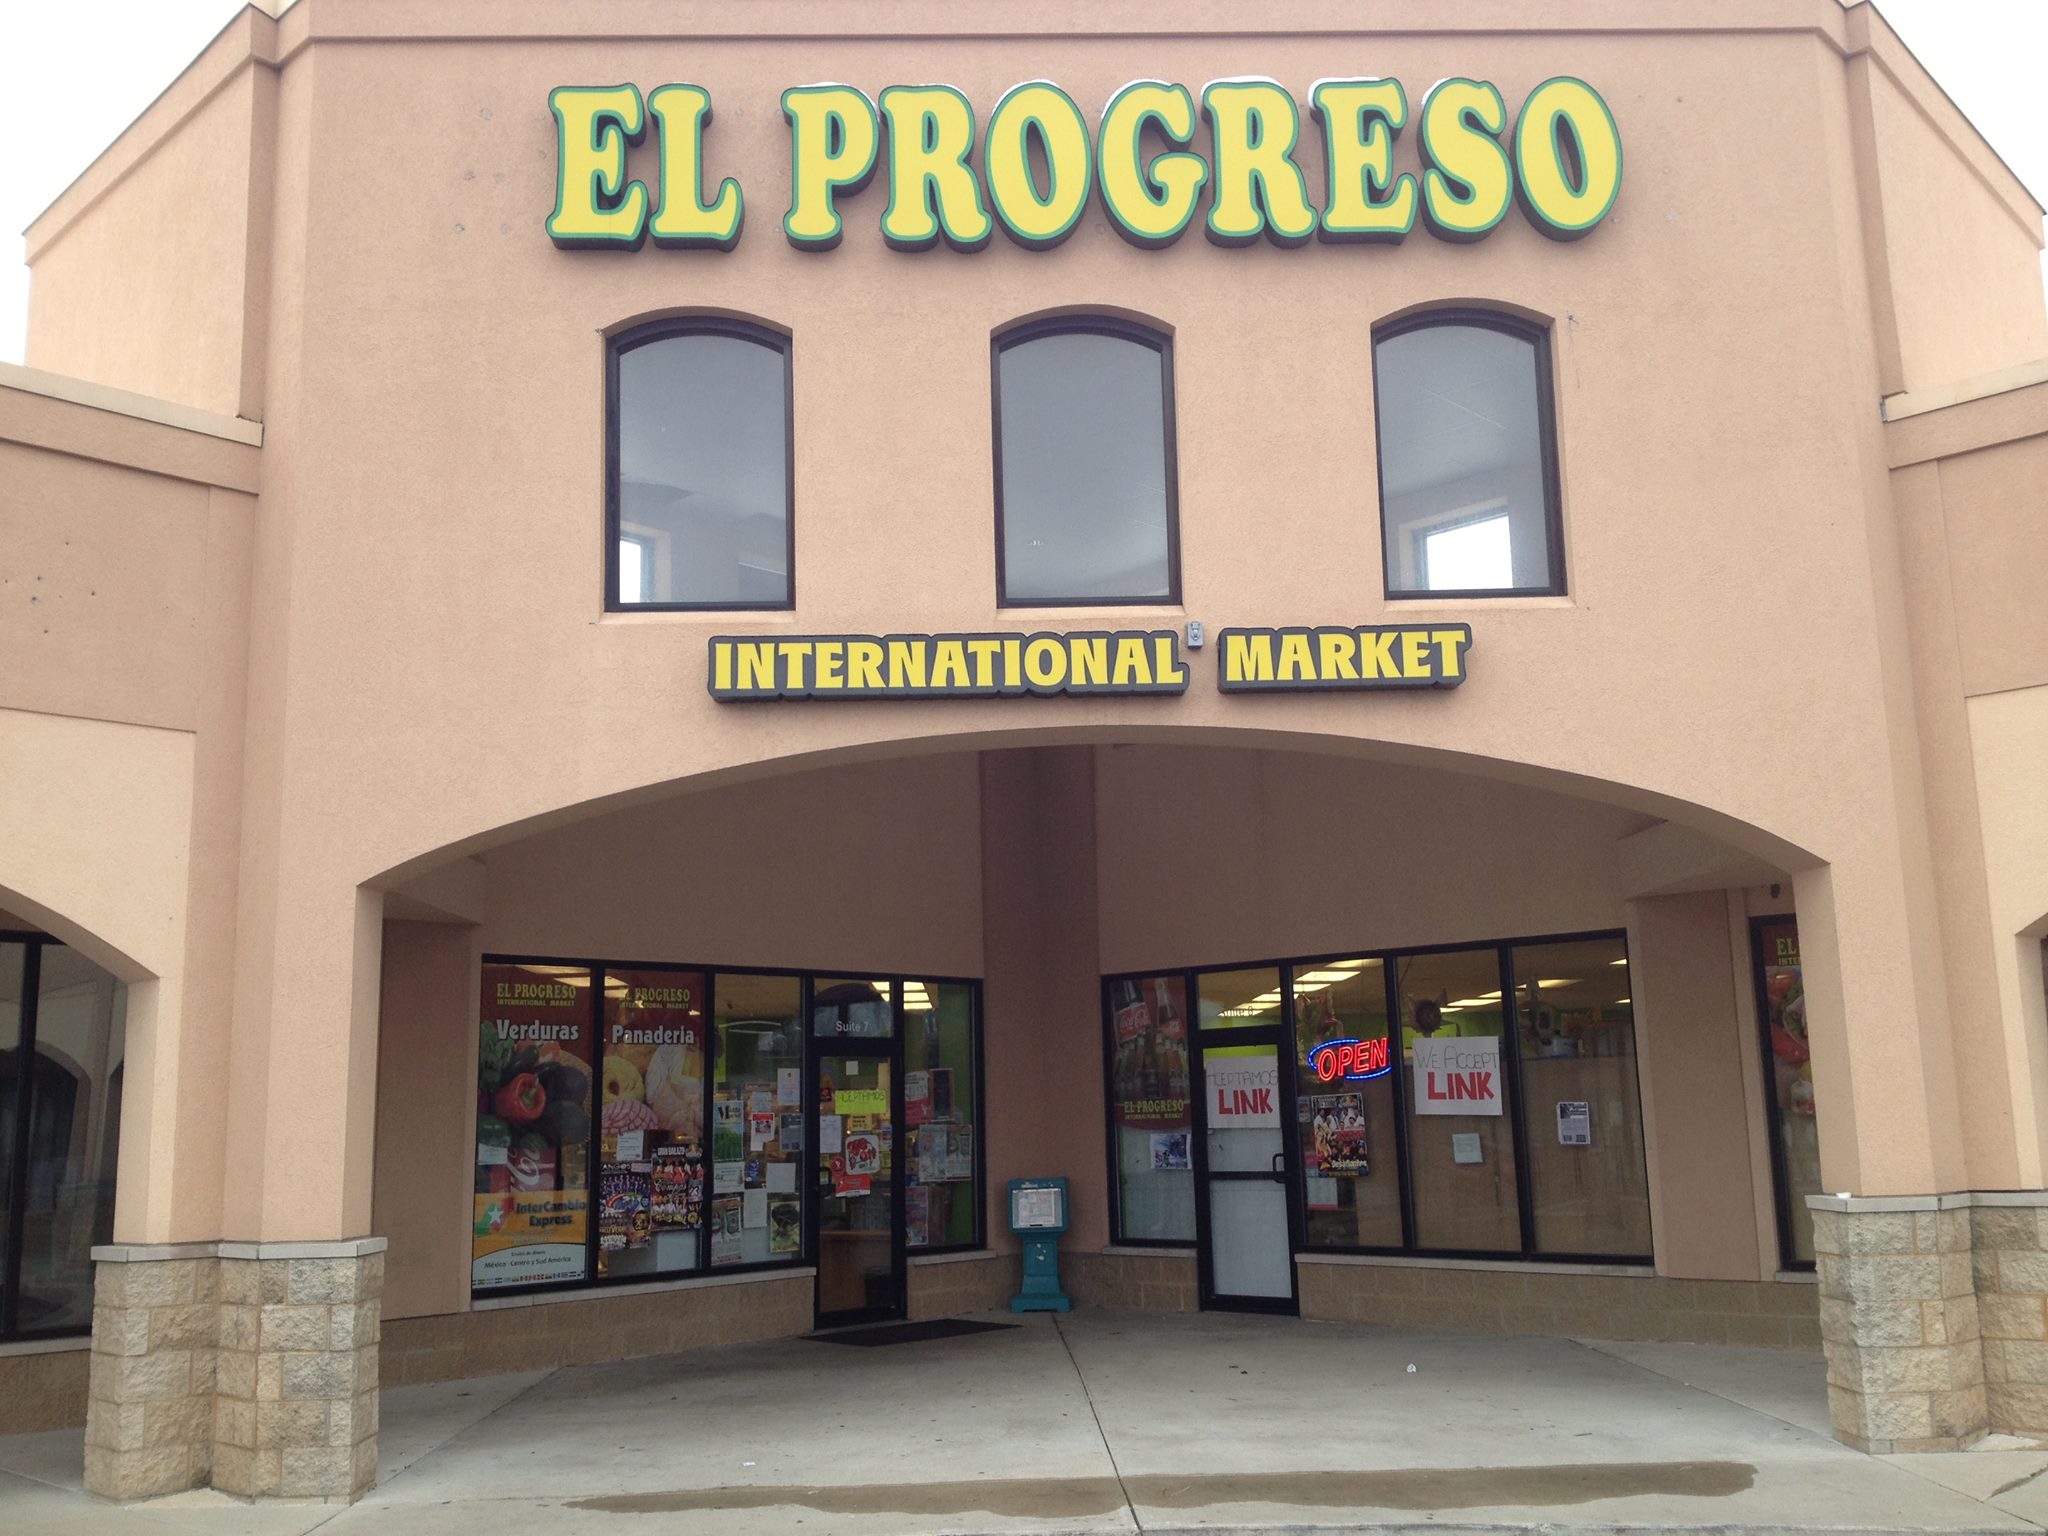 Exterior of El Progreso in Urbana.